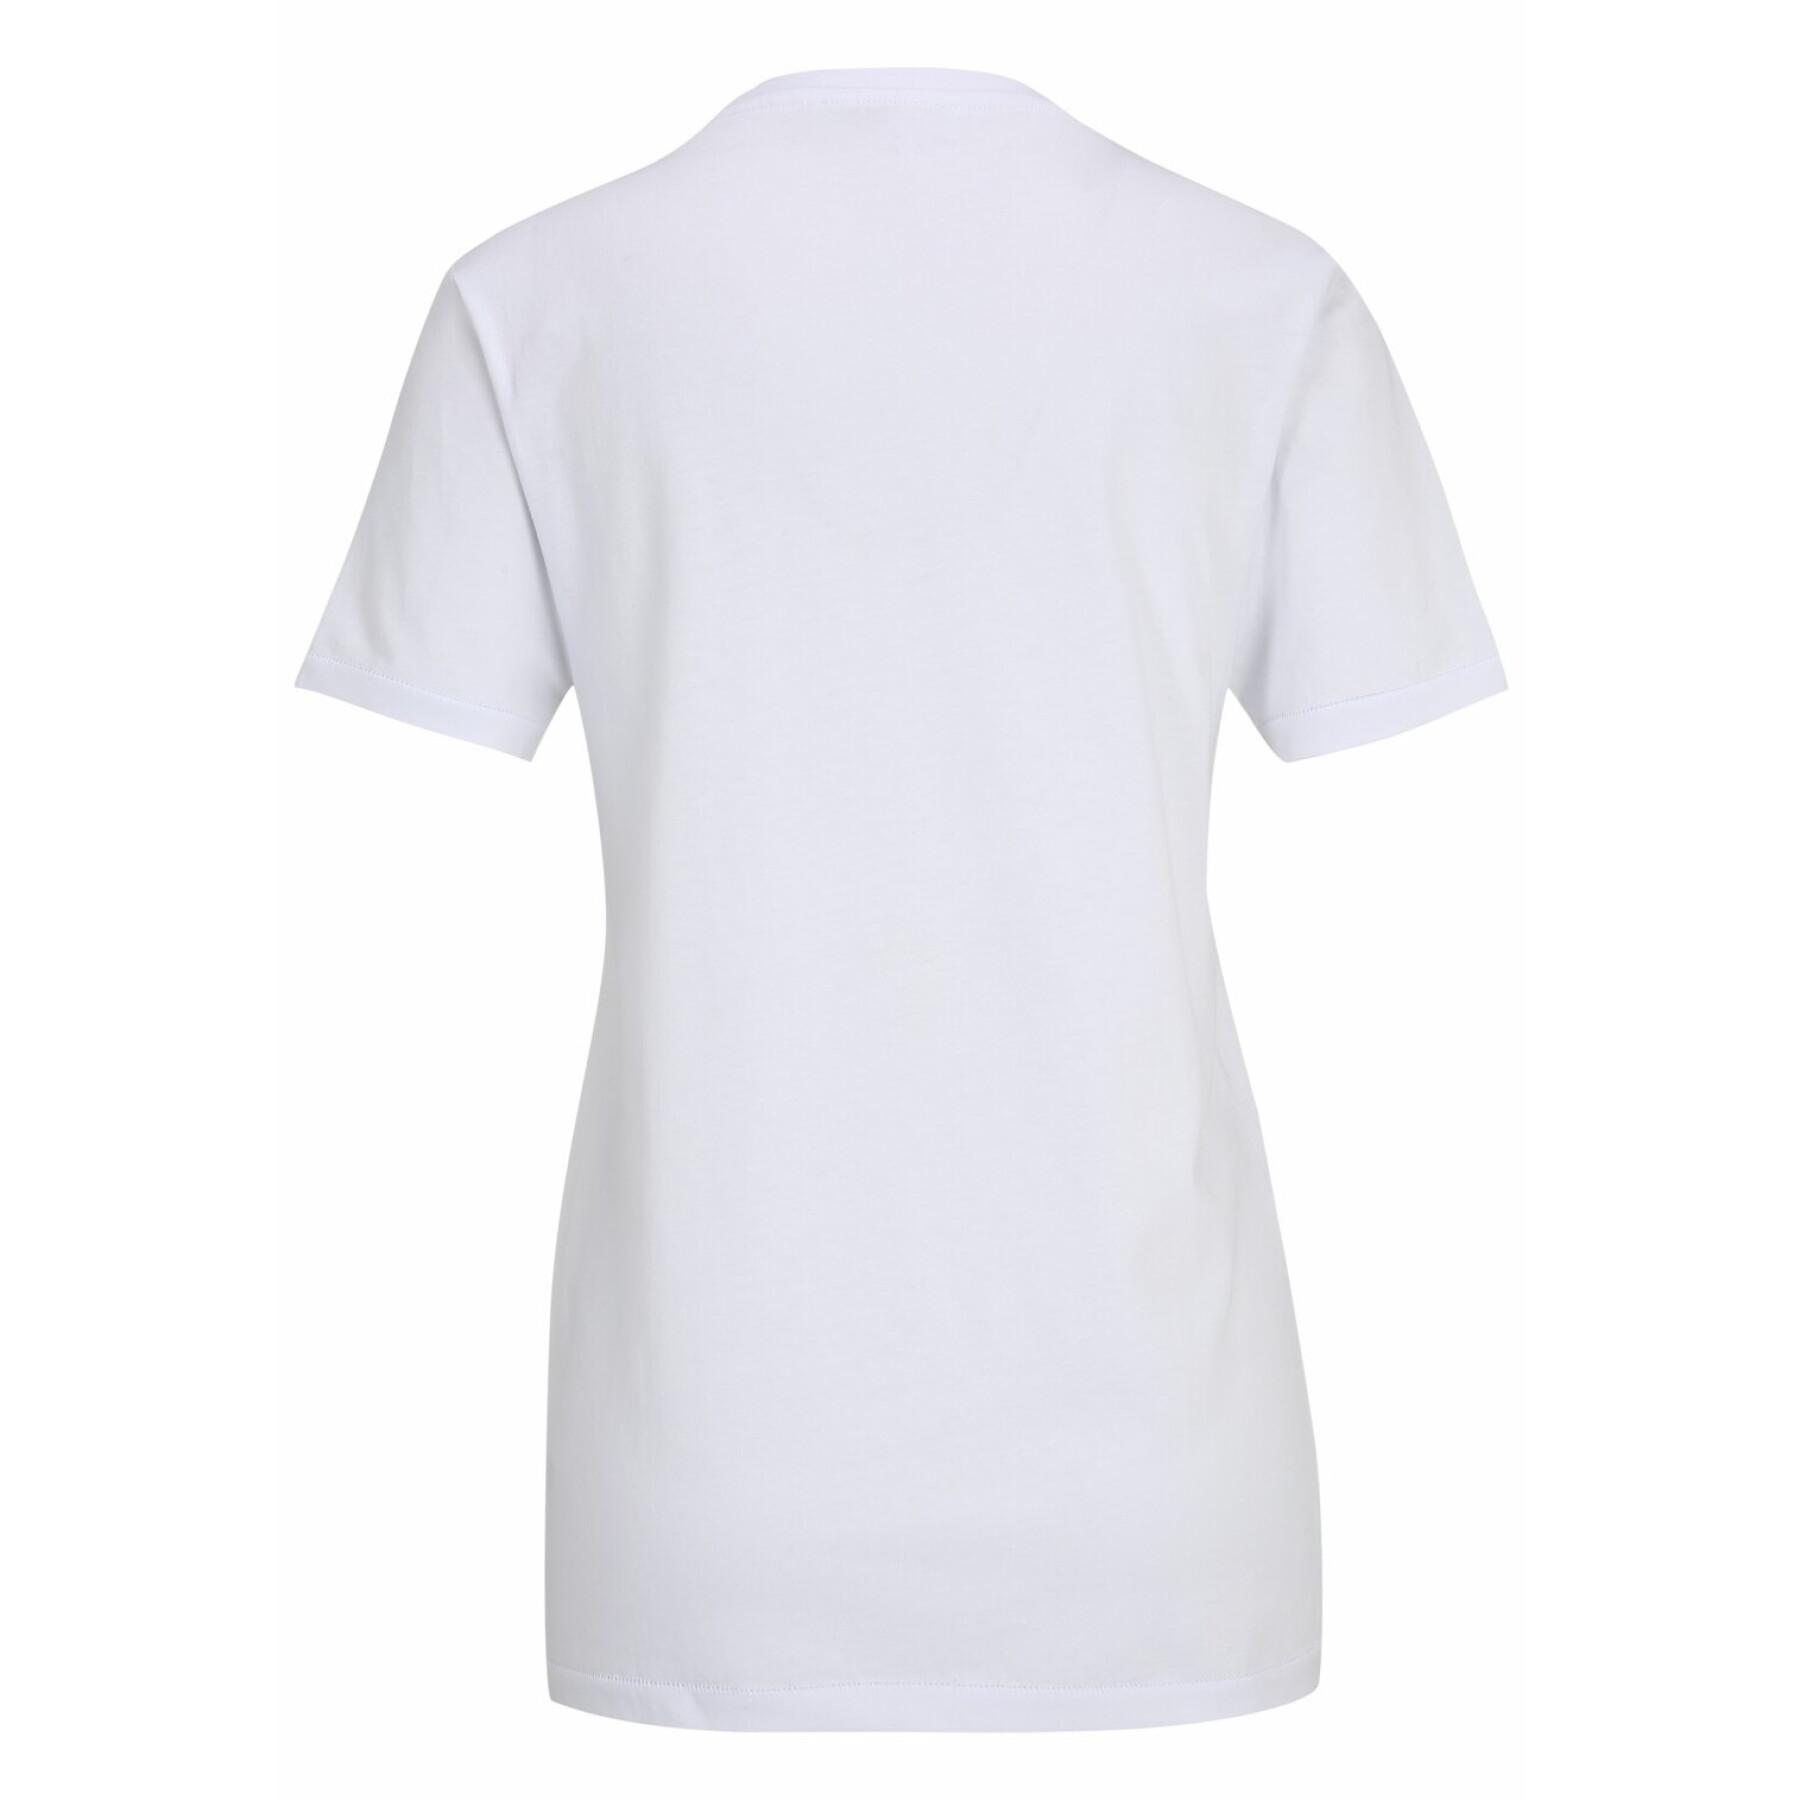 Plain T-shirt for women Tamaris Adria - T-shirts - T-shirts and tank tops -  Women's Clothing